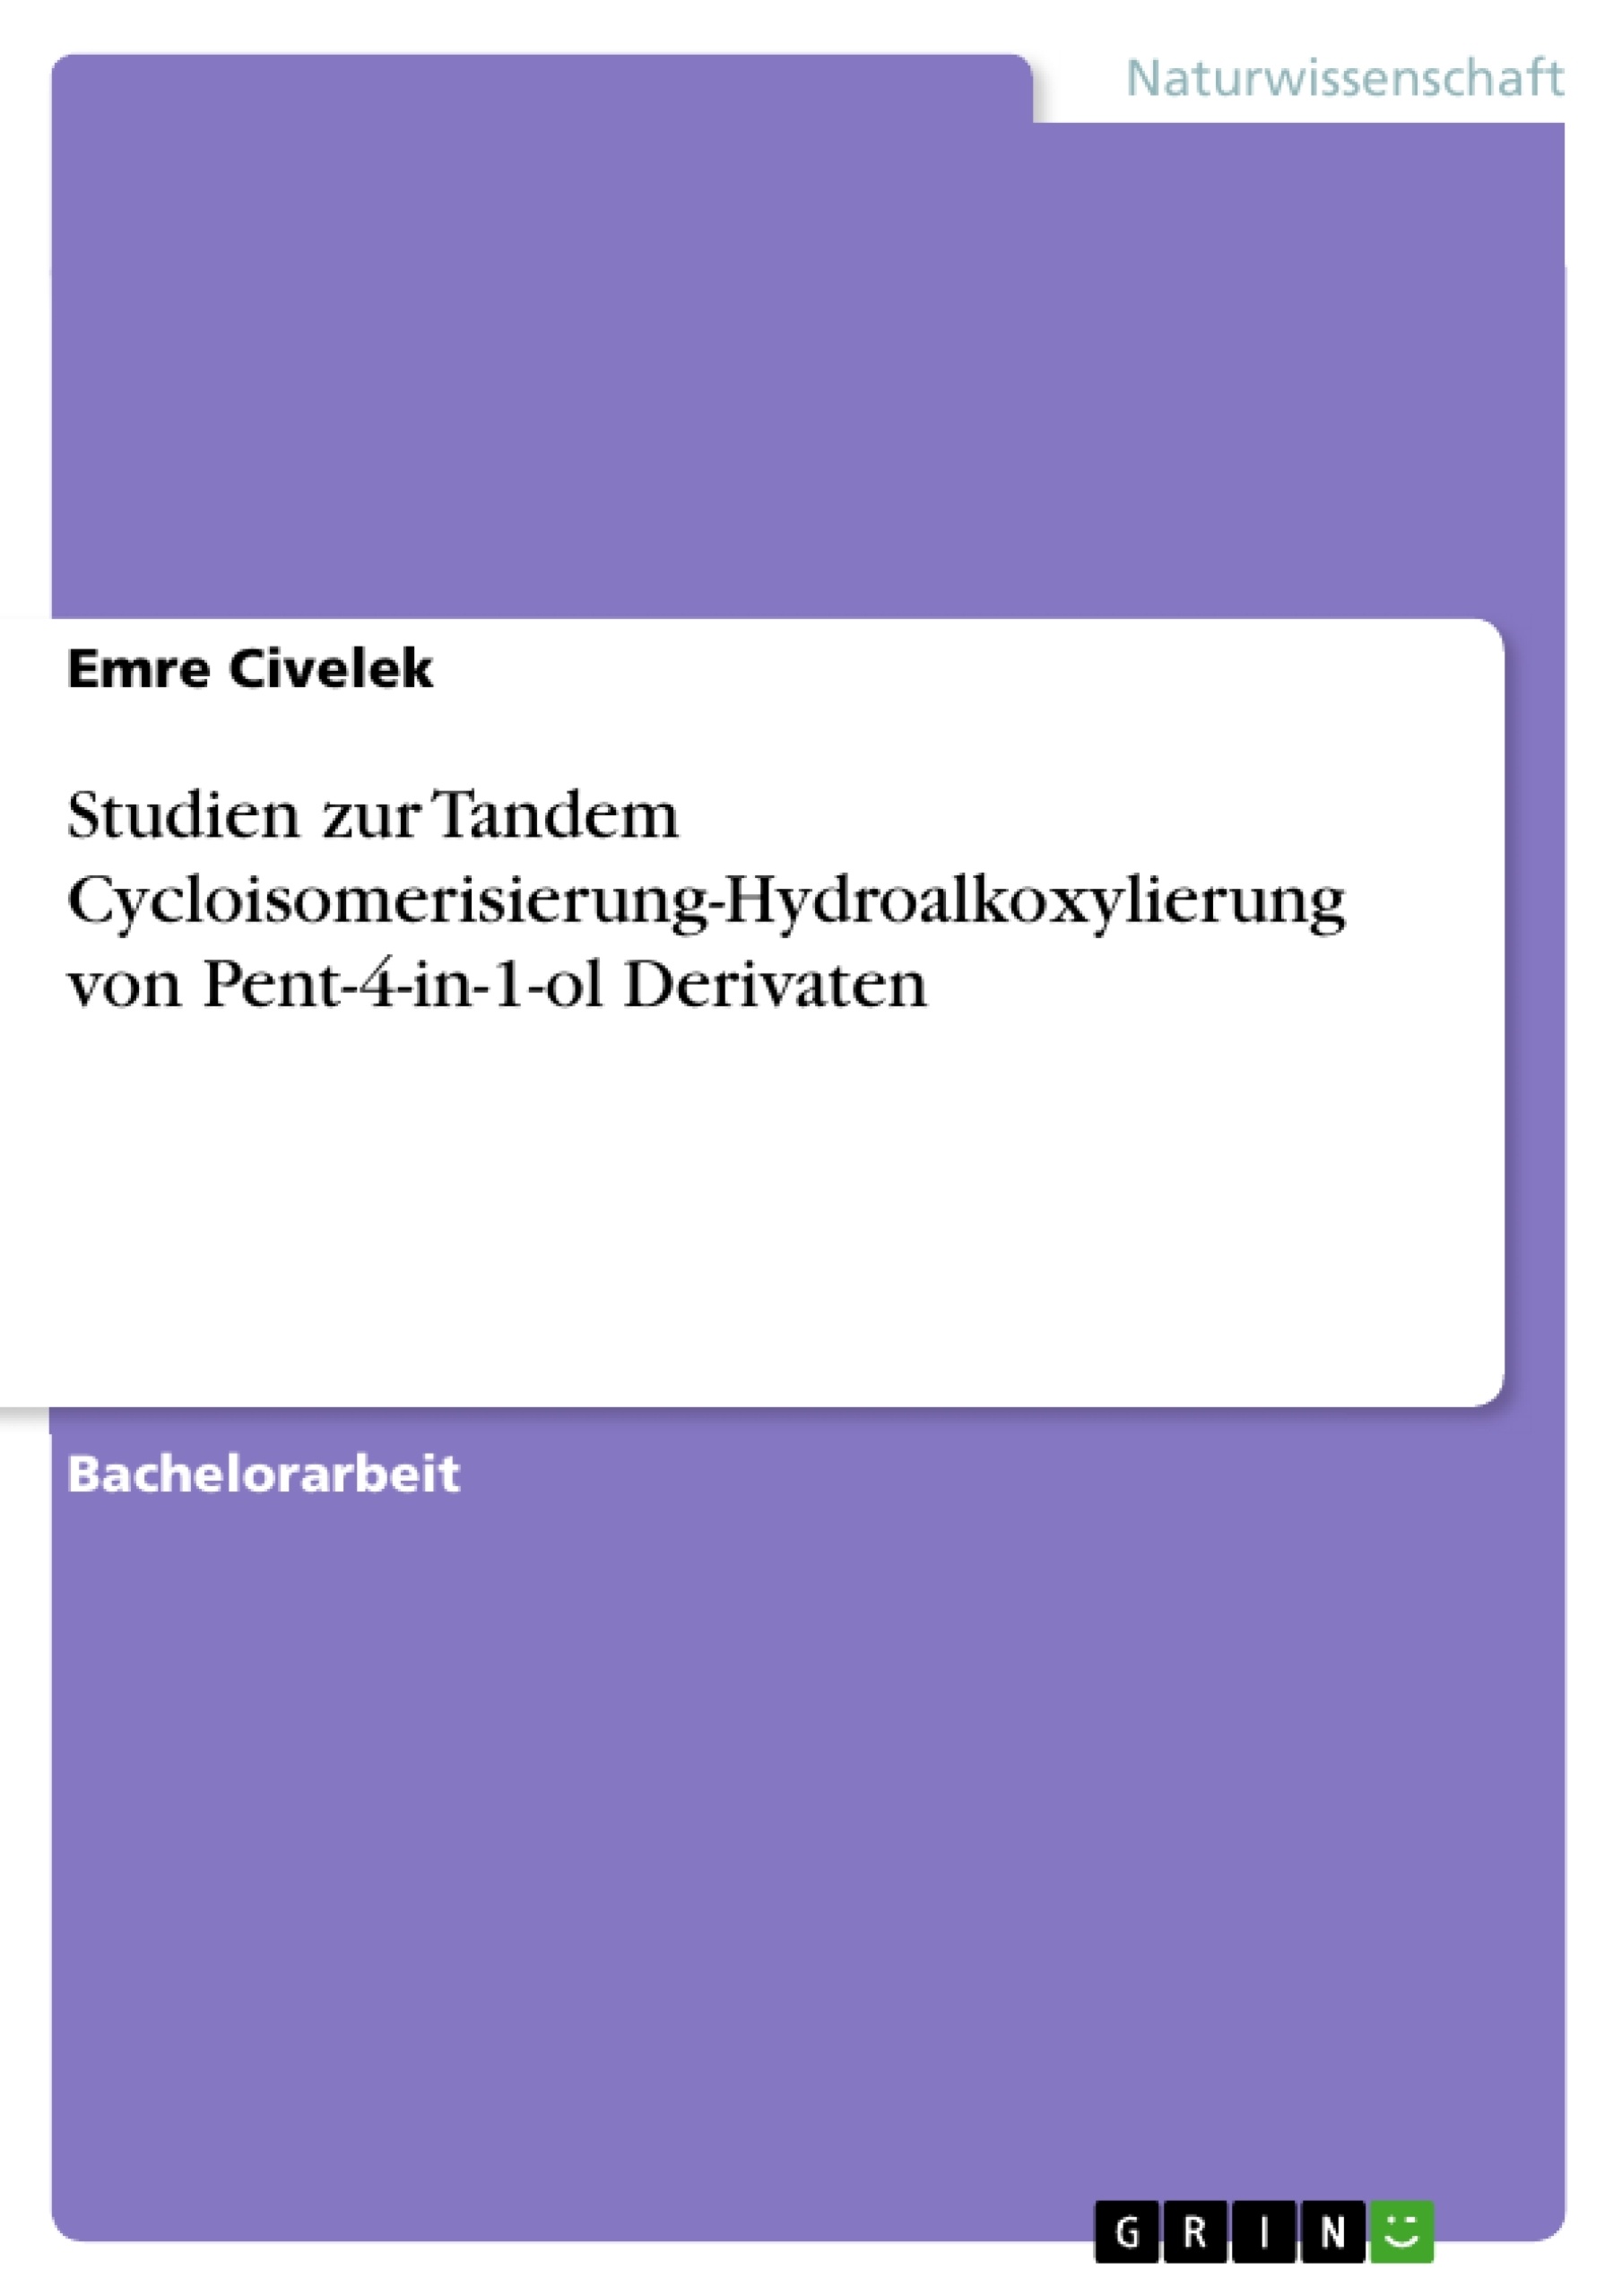 Title: Studien zur Tandem Cycloisomerisierung-Hydroalkoxylierung von Pent-4-in-1-ol Derivaten